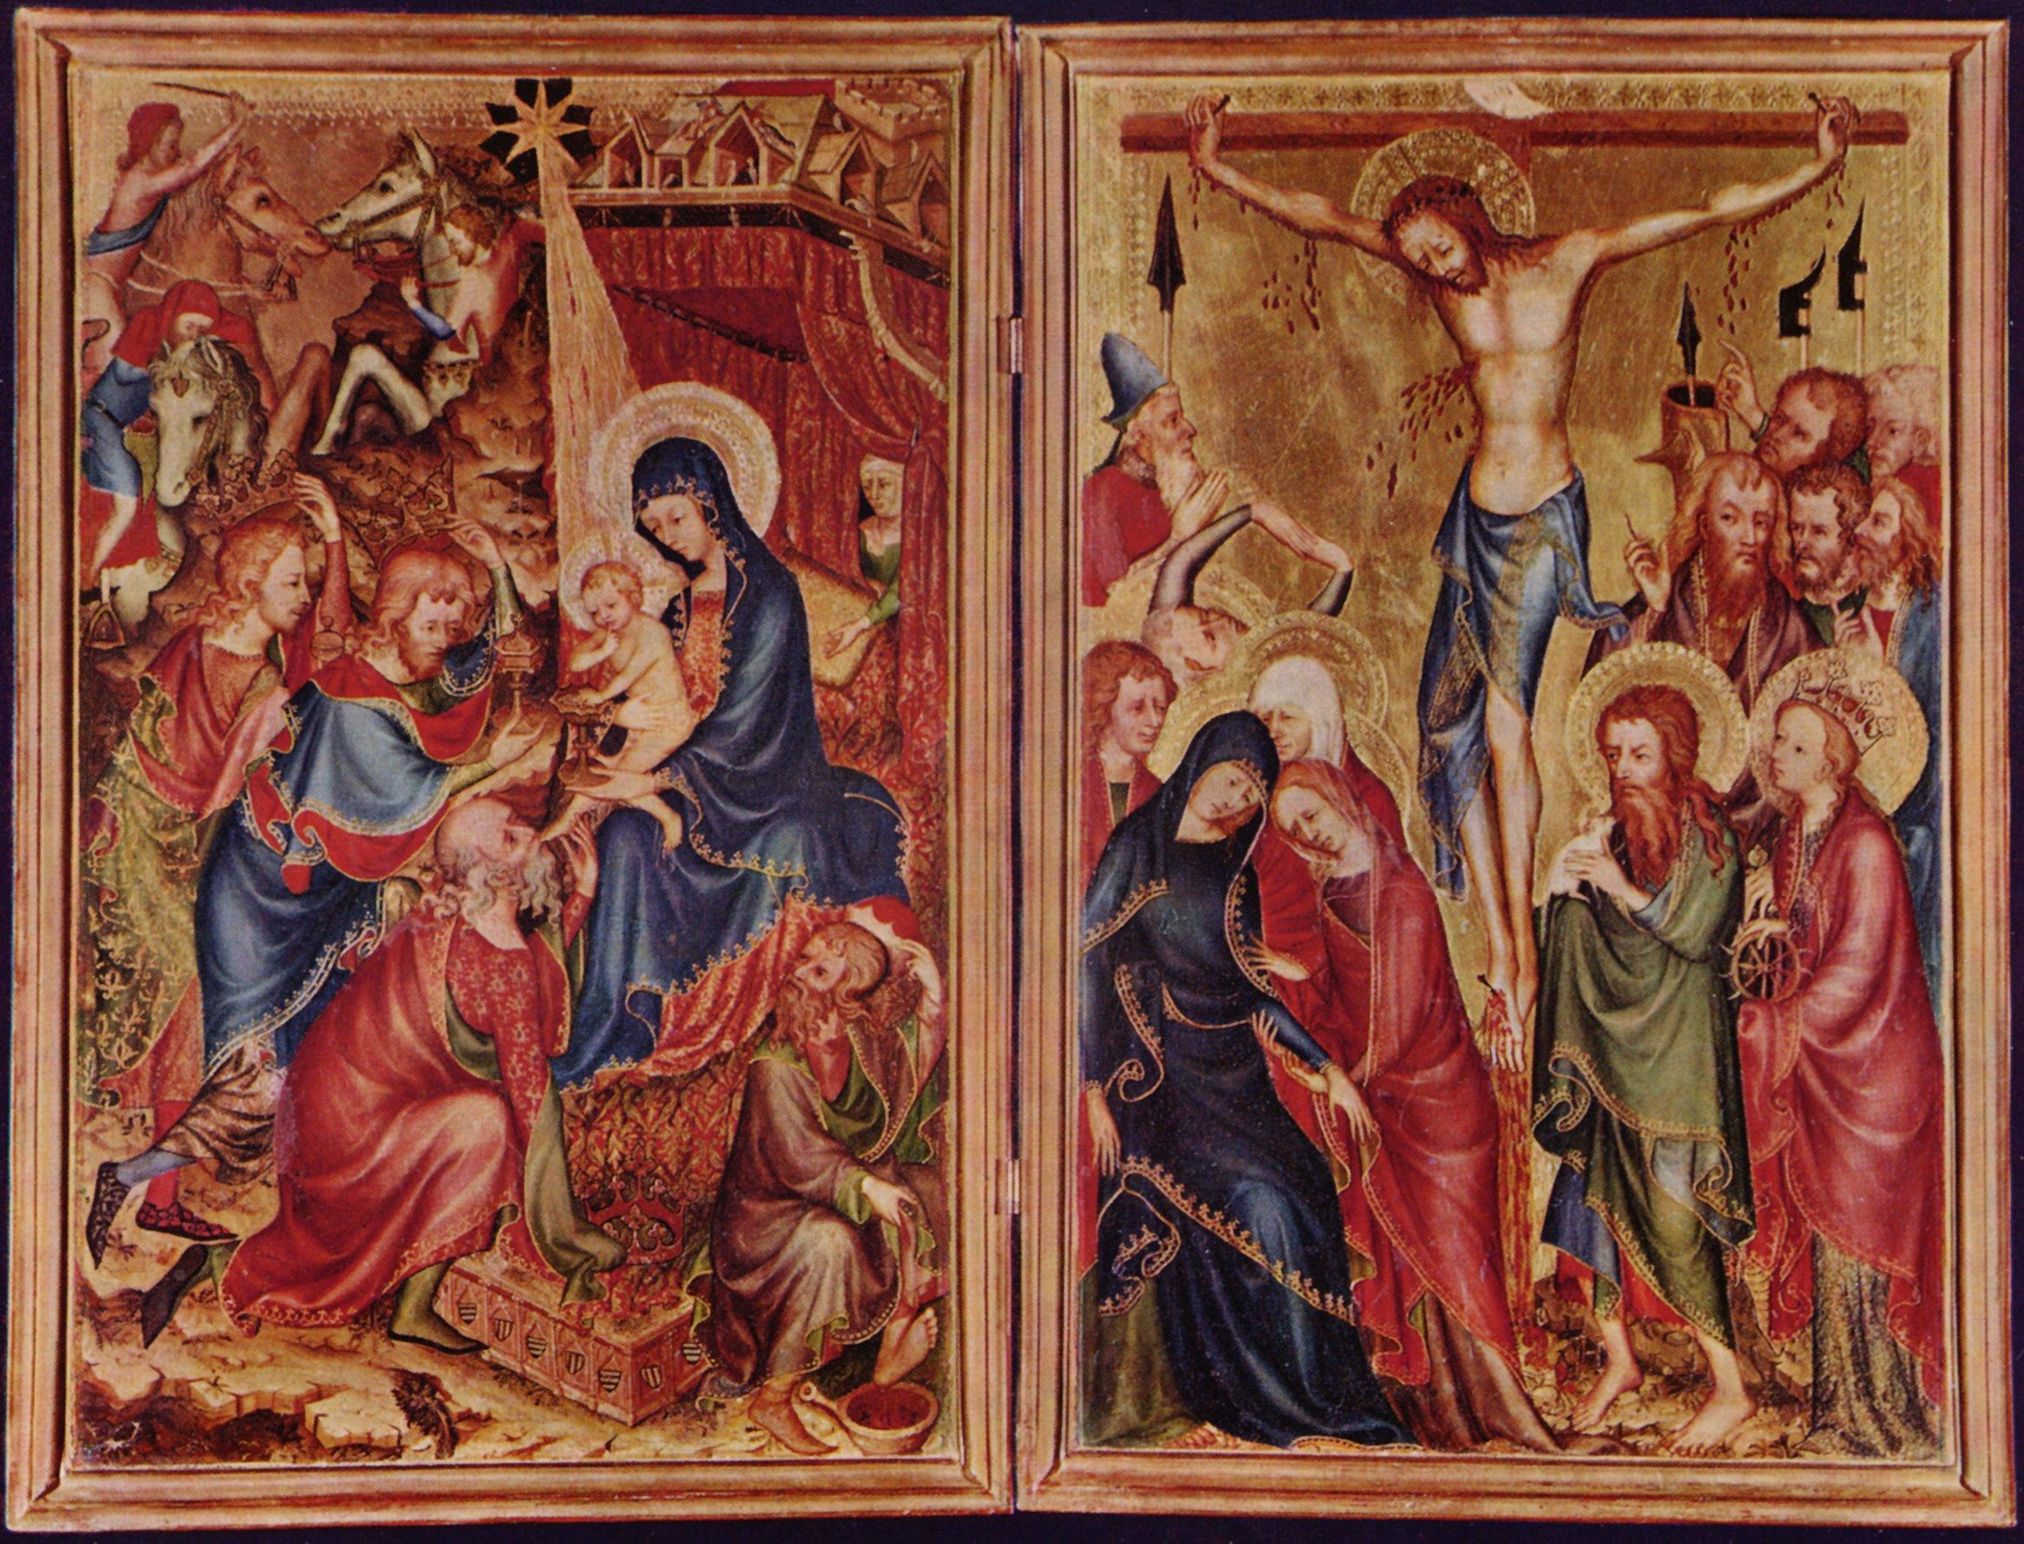 Meister des Kleinen Diptychons des Bargello: Bargello-Diptychon, linke Szene: Anbetung der Knige, rechte Szene: Kreuzigung Christi